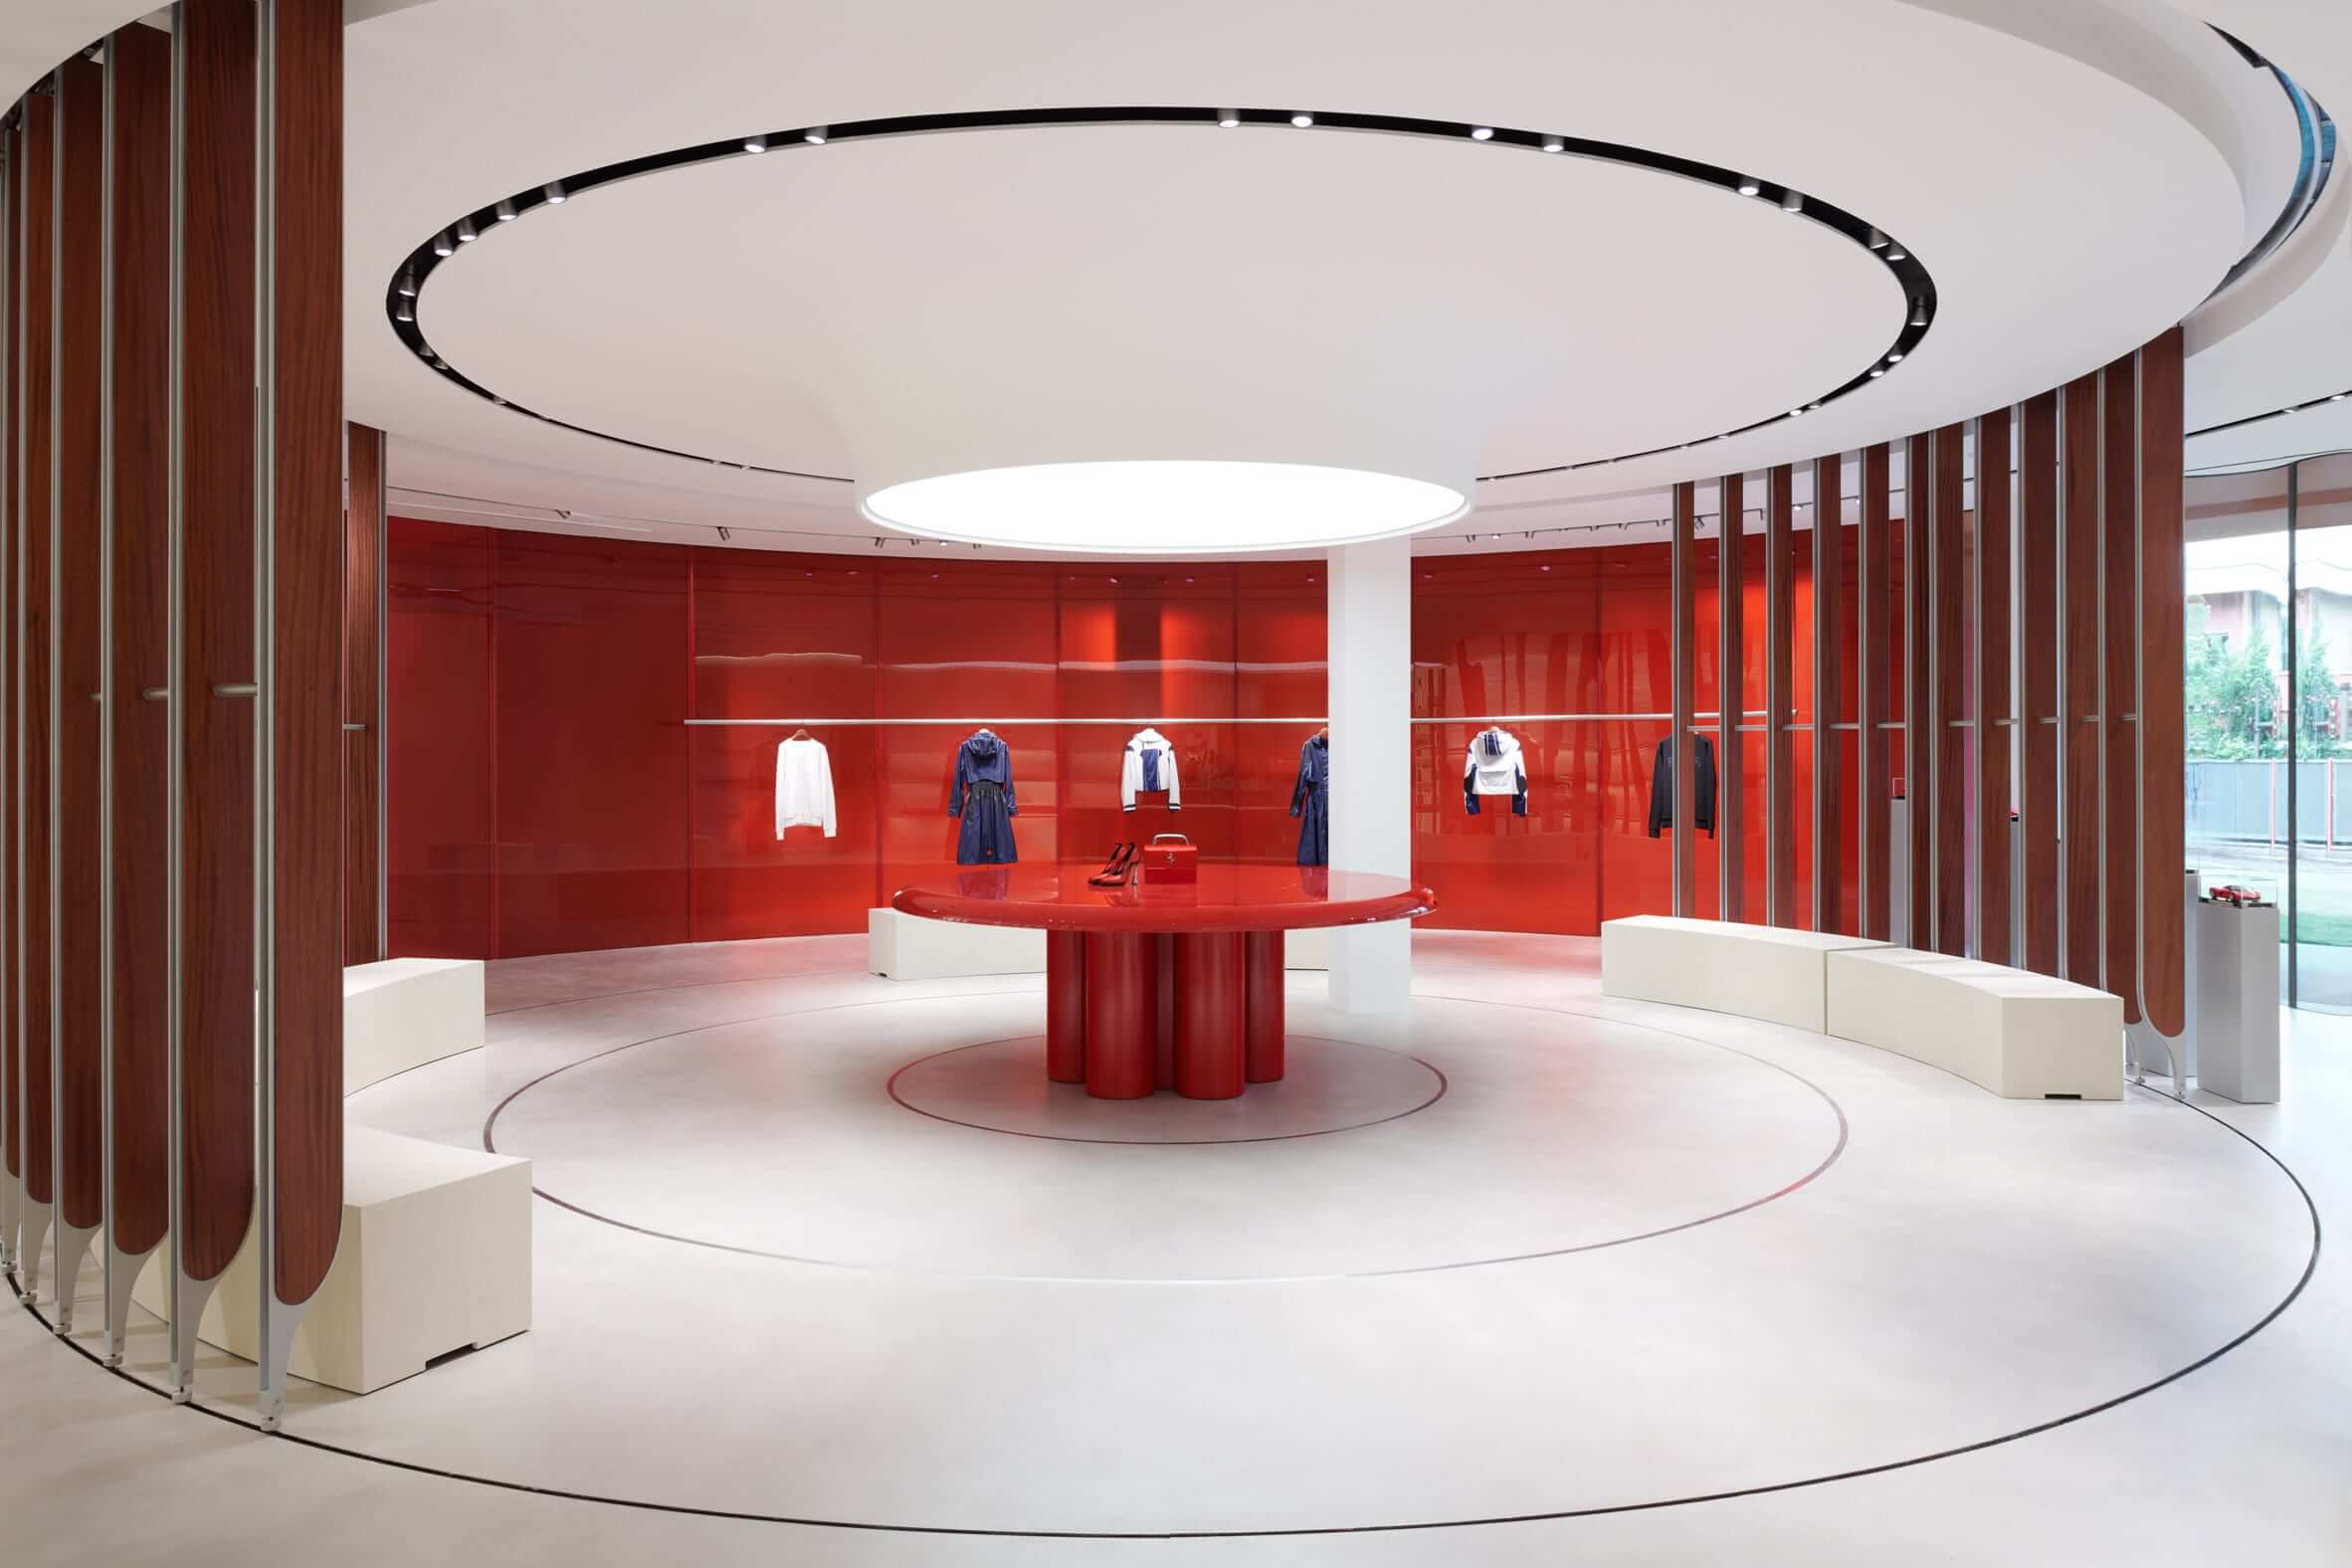 New Ferrari Lifestyle Concept Store in Maranello by Sybarite architecture studio